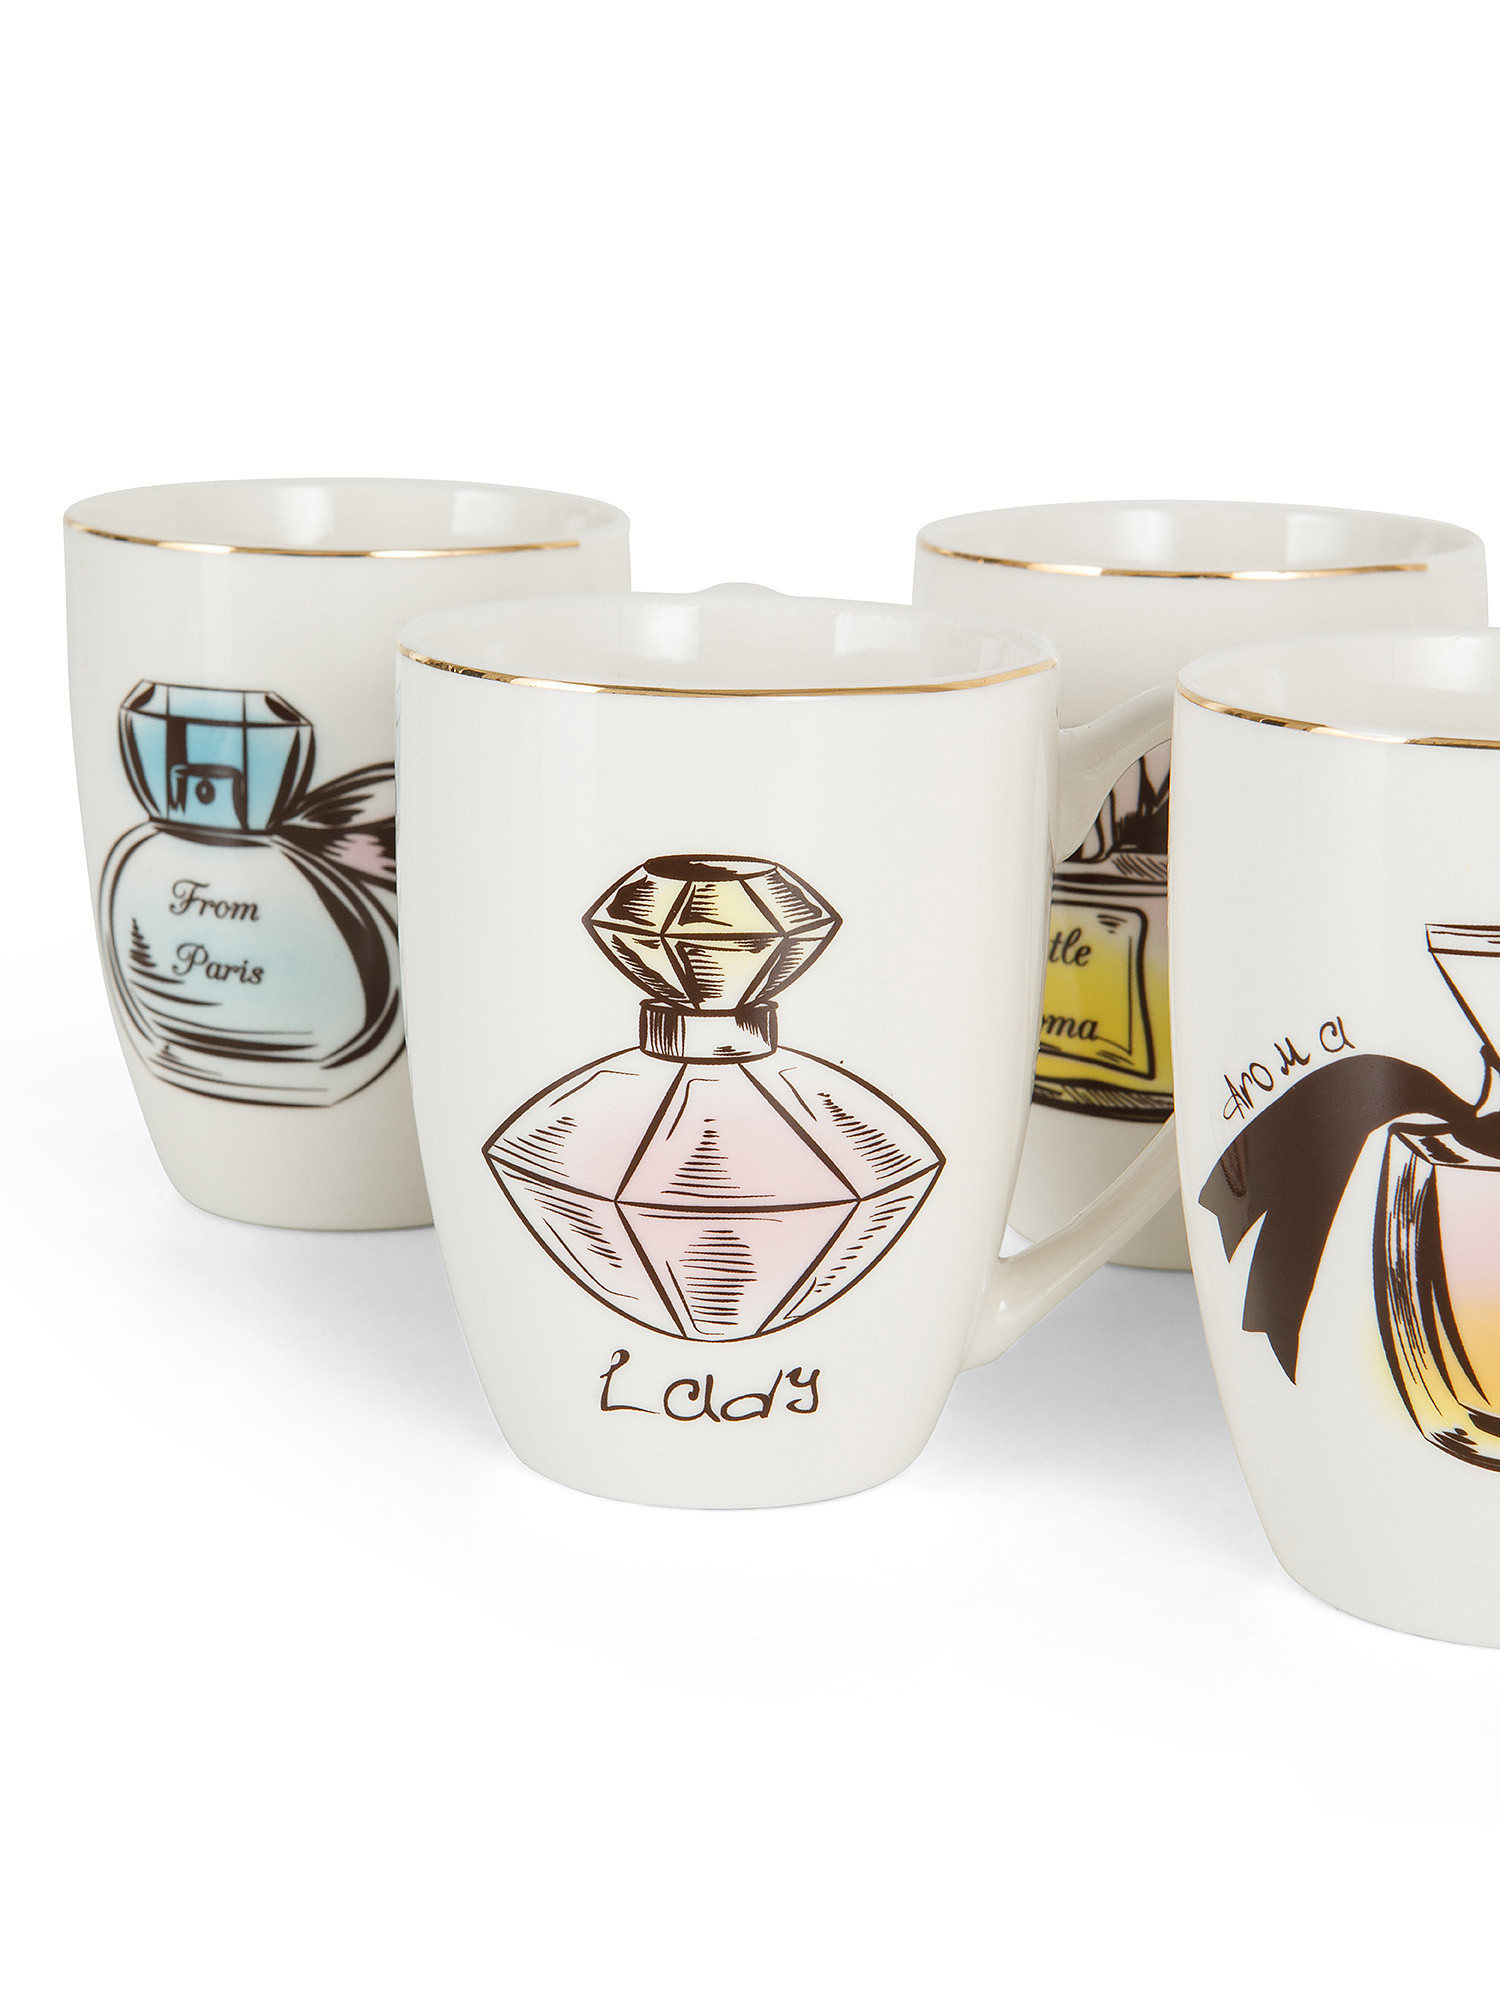 New bone china mug with perfume design, White, large image number 1